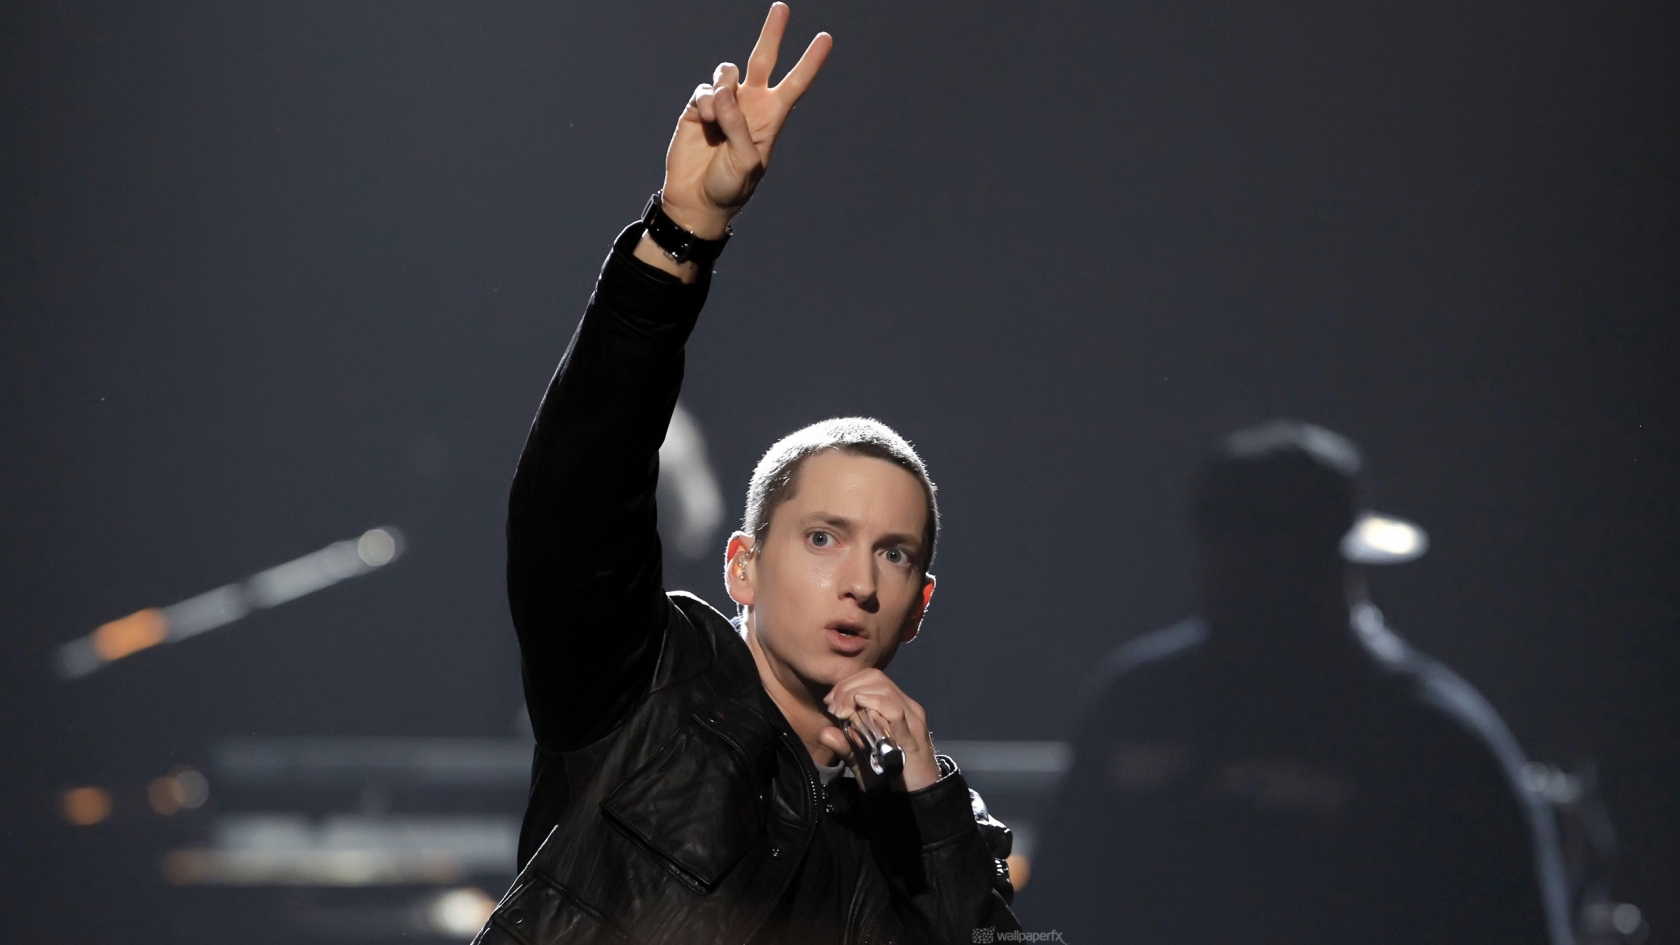 Eminem Peace for 1680 x 945 HDTV resolution